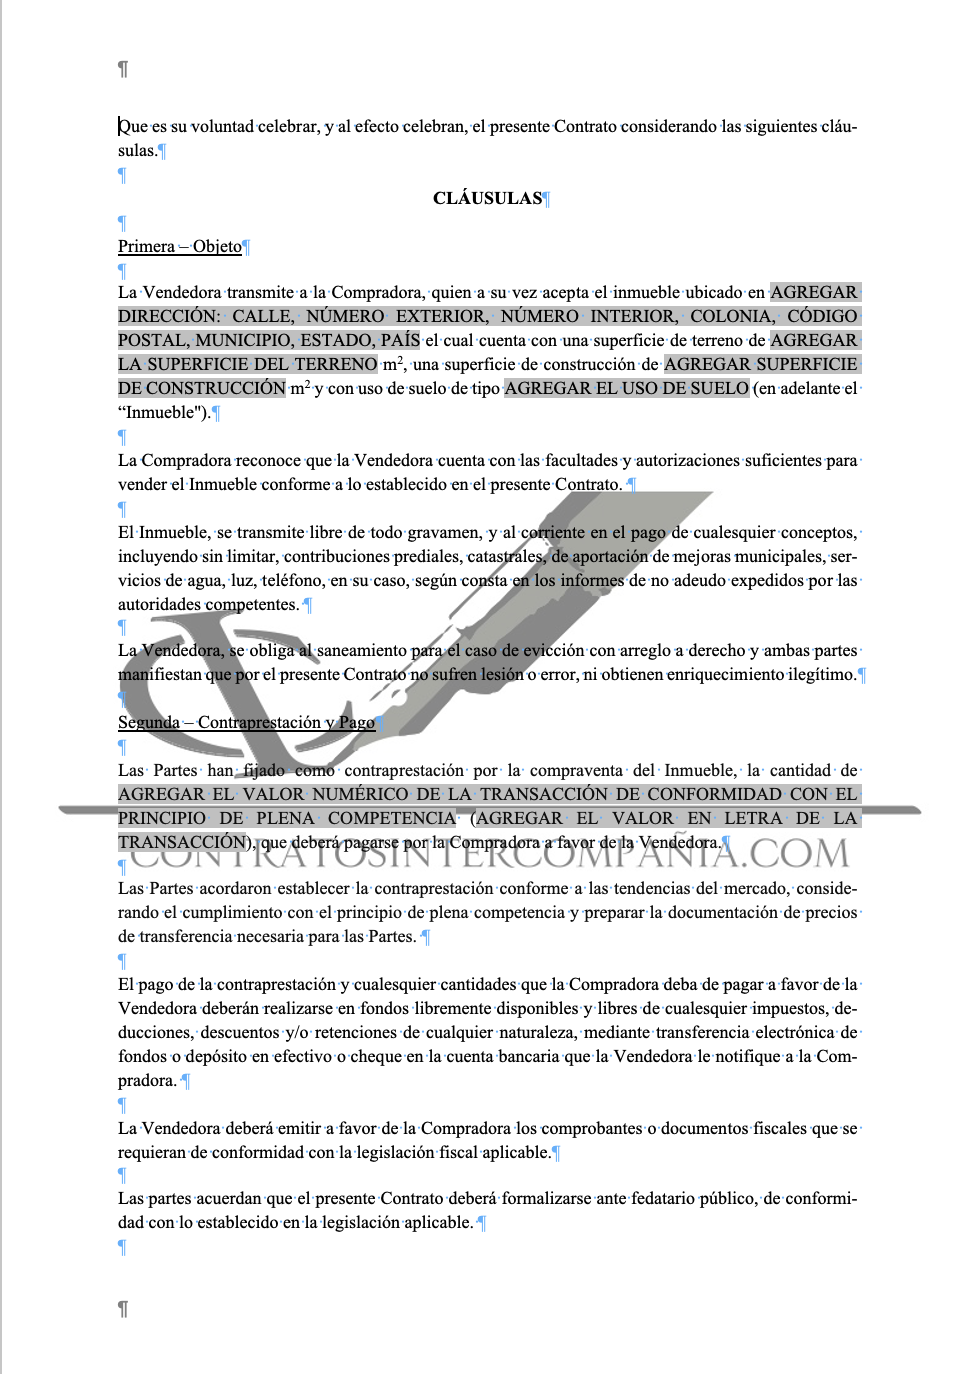 Contrato de compra-venta de inmuebles - Contratos Intercompañía